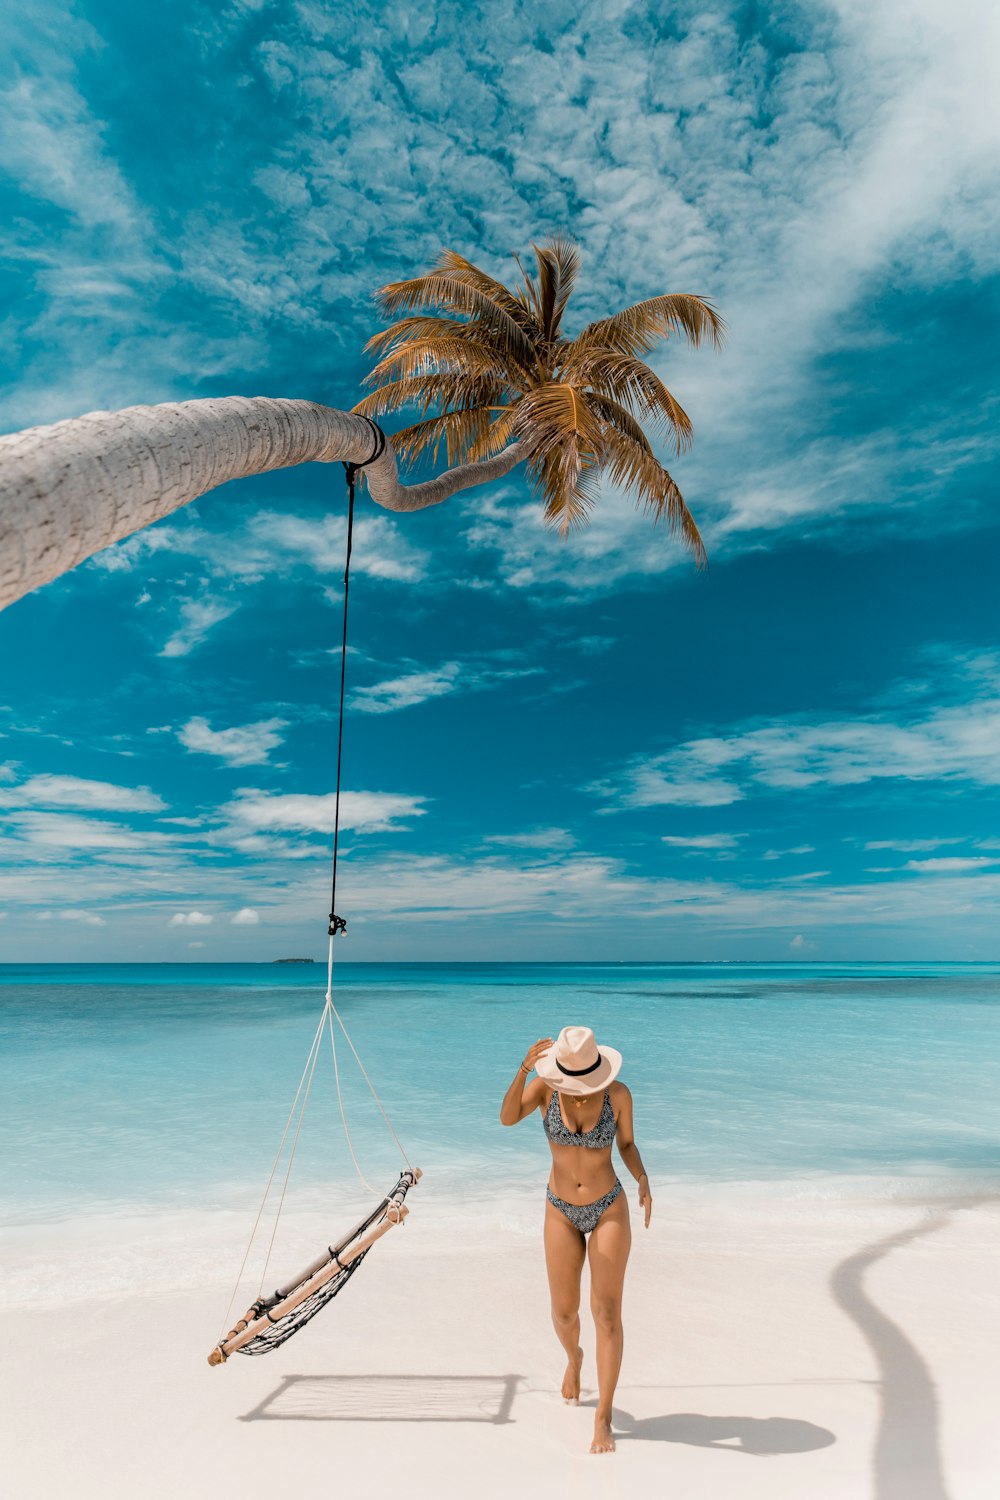 uma pessoa em pé em uma praia com uma palmeira e um barco